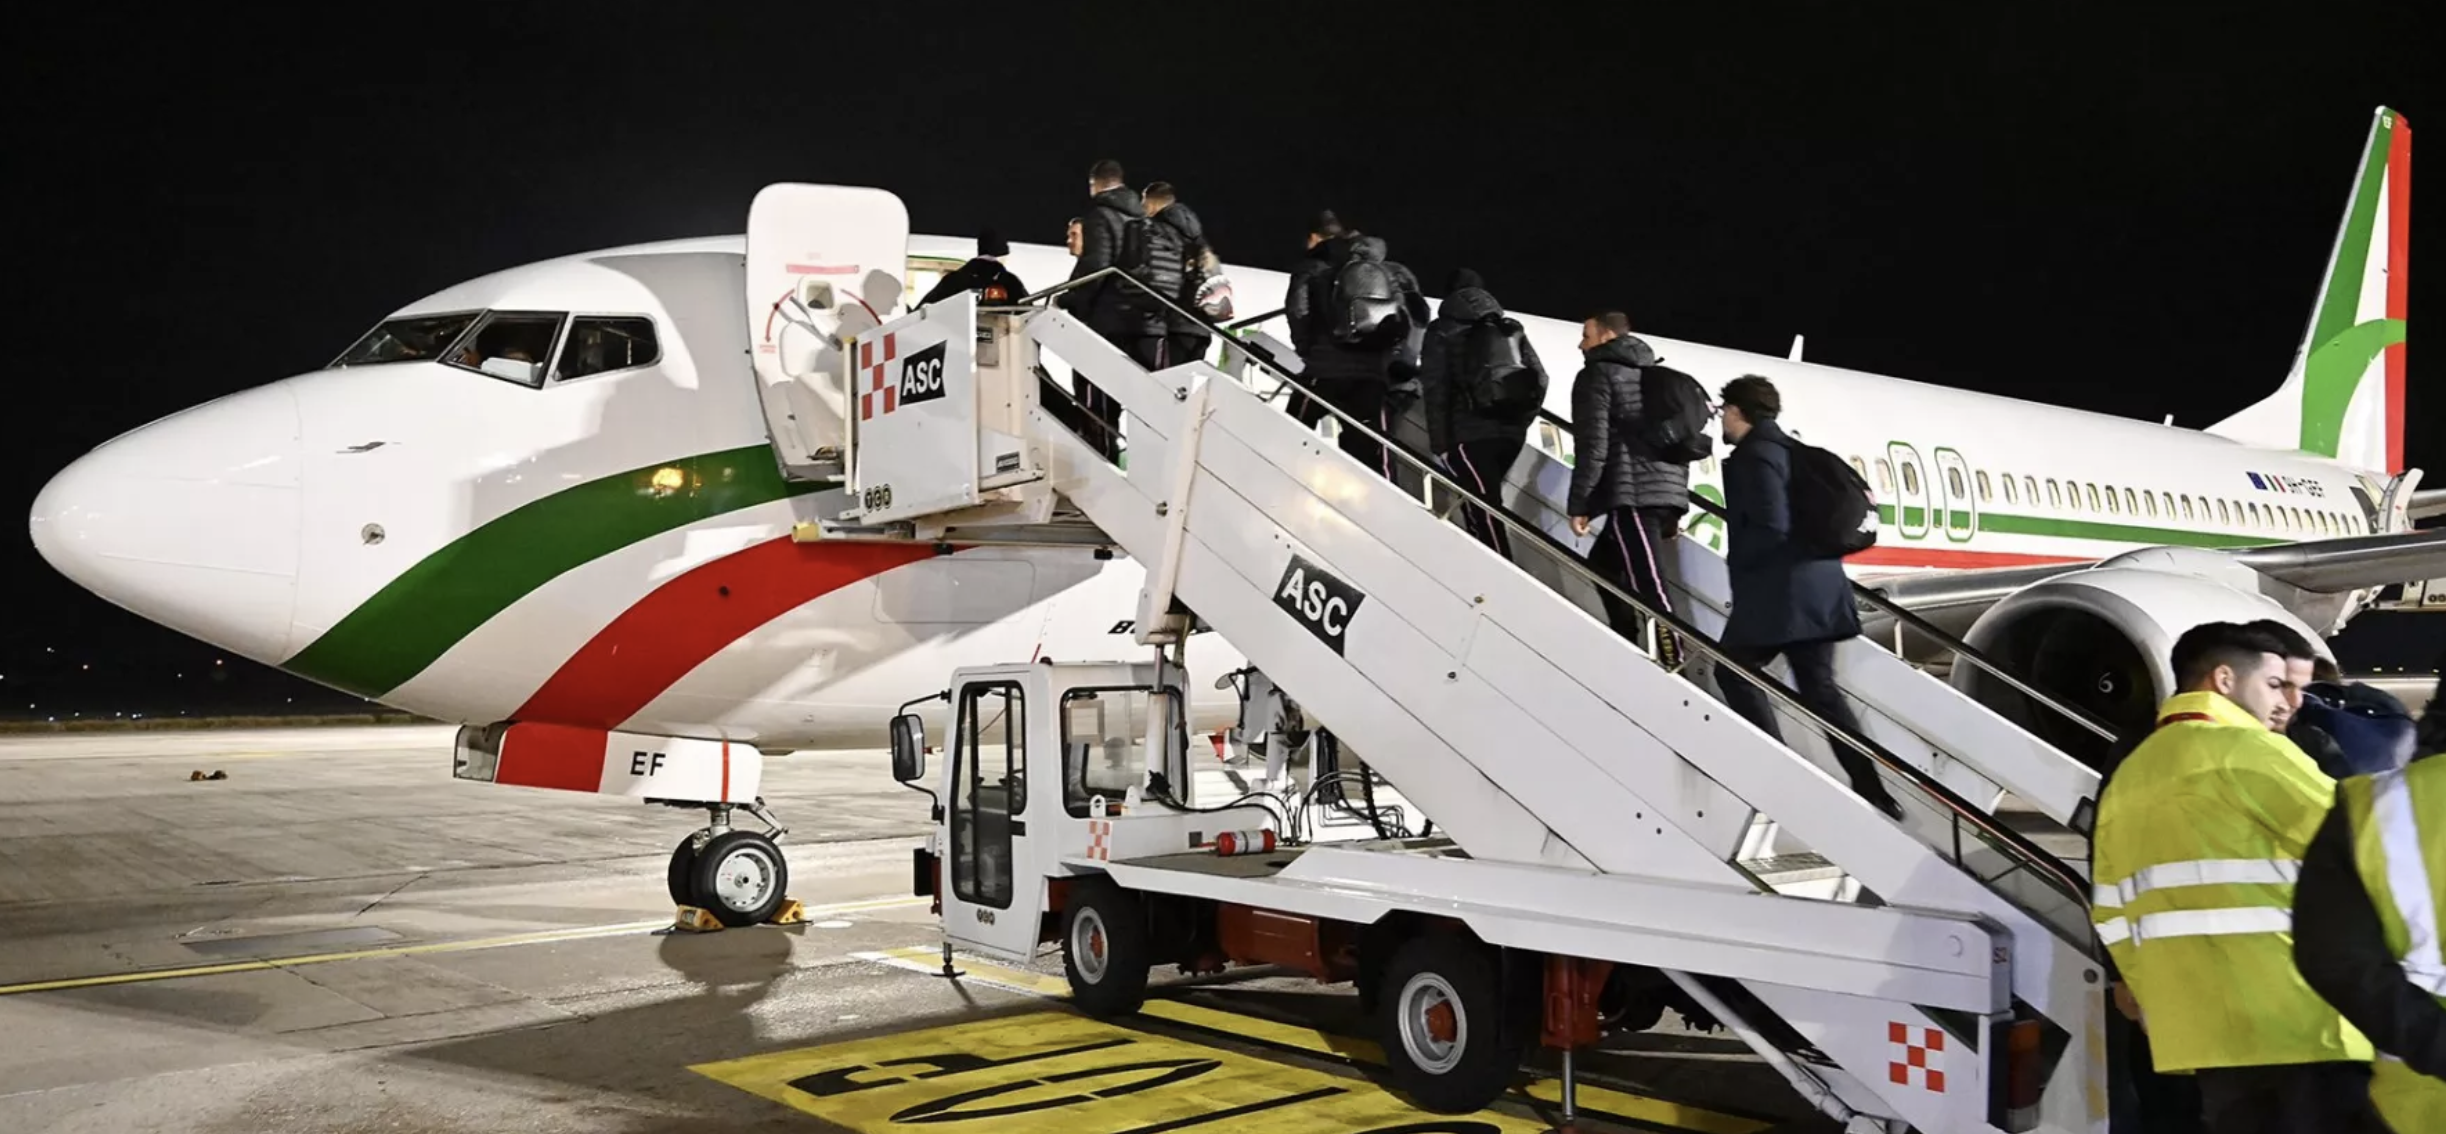 L'aereo parte in ritardo, rinviata la gara Ascoli - Palermo: per i 222 tifosi al seguito maglie in omaggio